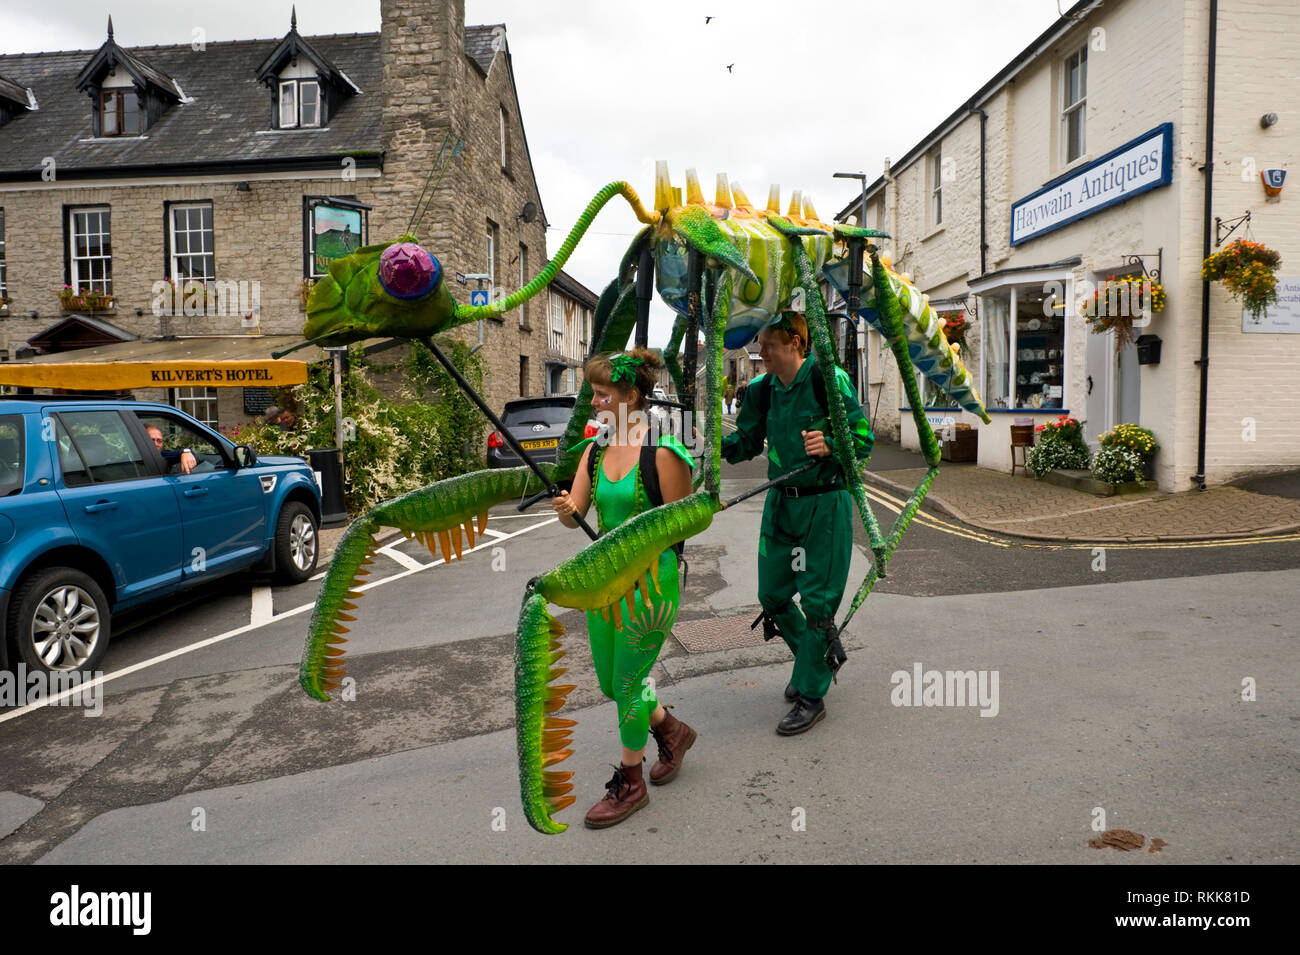 Grande verde mantide religiosa un automa parte di un progetto artistico essendo sfilavano attorno al centro abitato di Hay on Wye Powys Wales UK Foto Stock